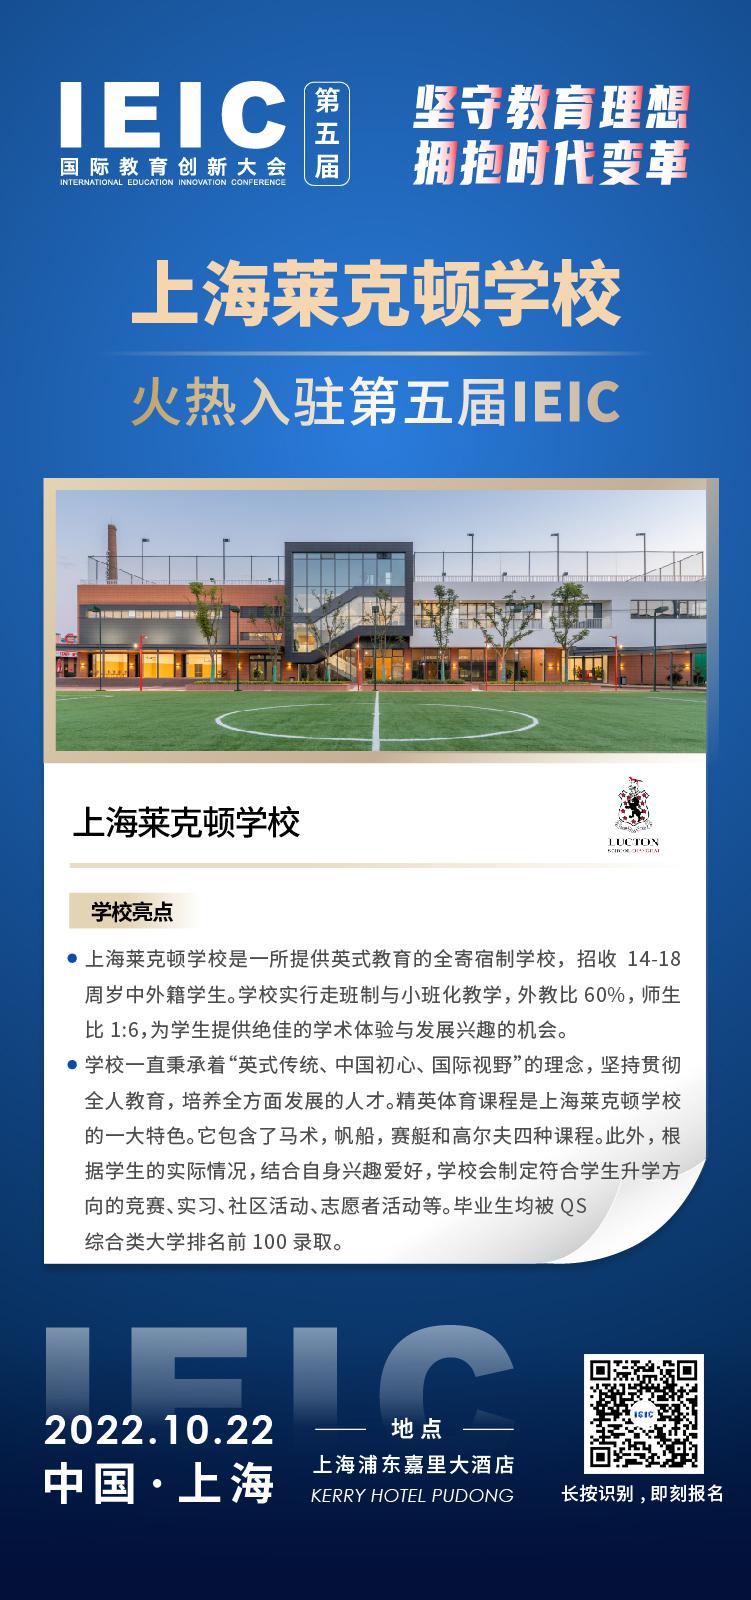 上海莱克顿学校入驻2022第五届IEIC国际教育创新大会